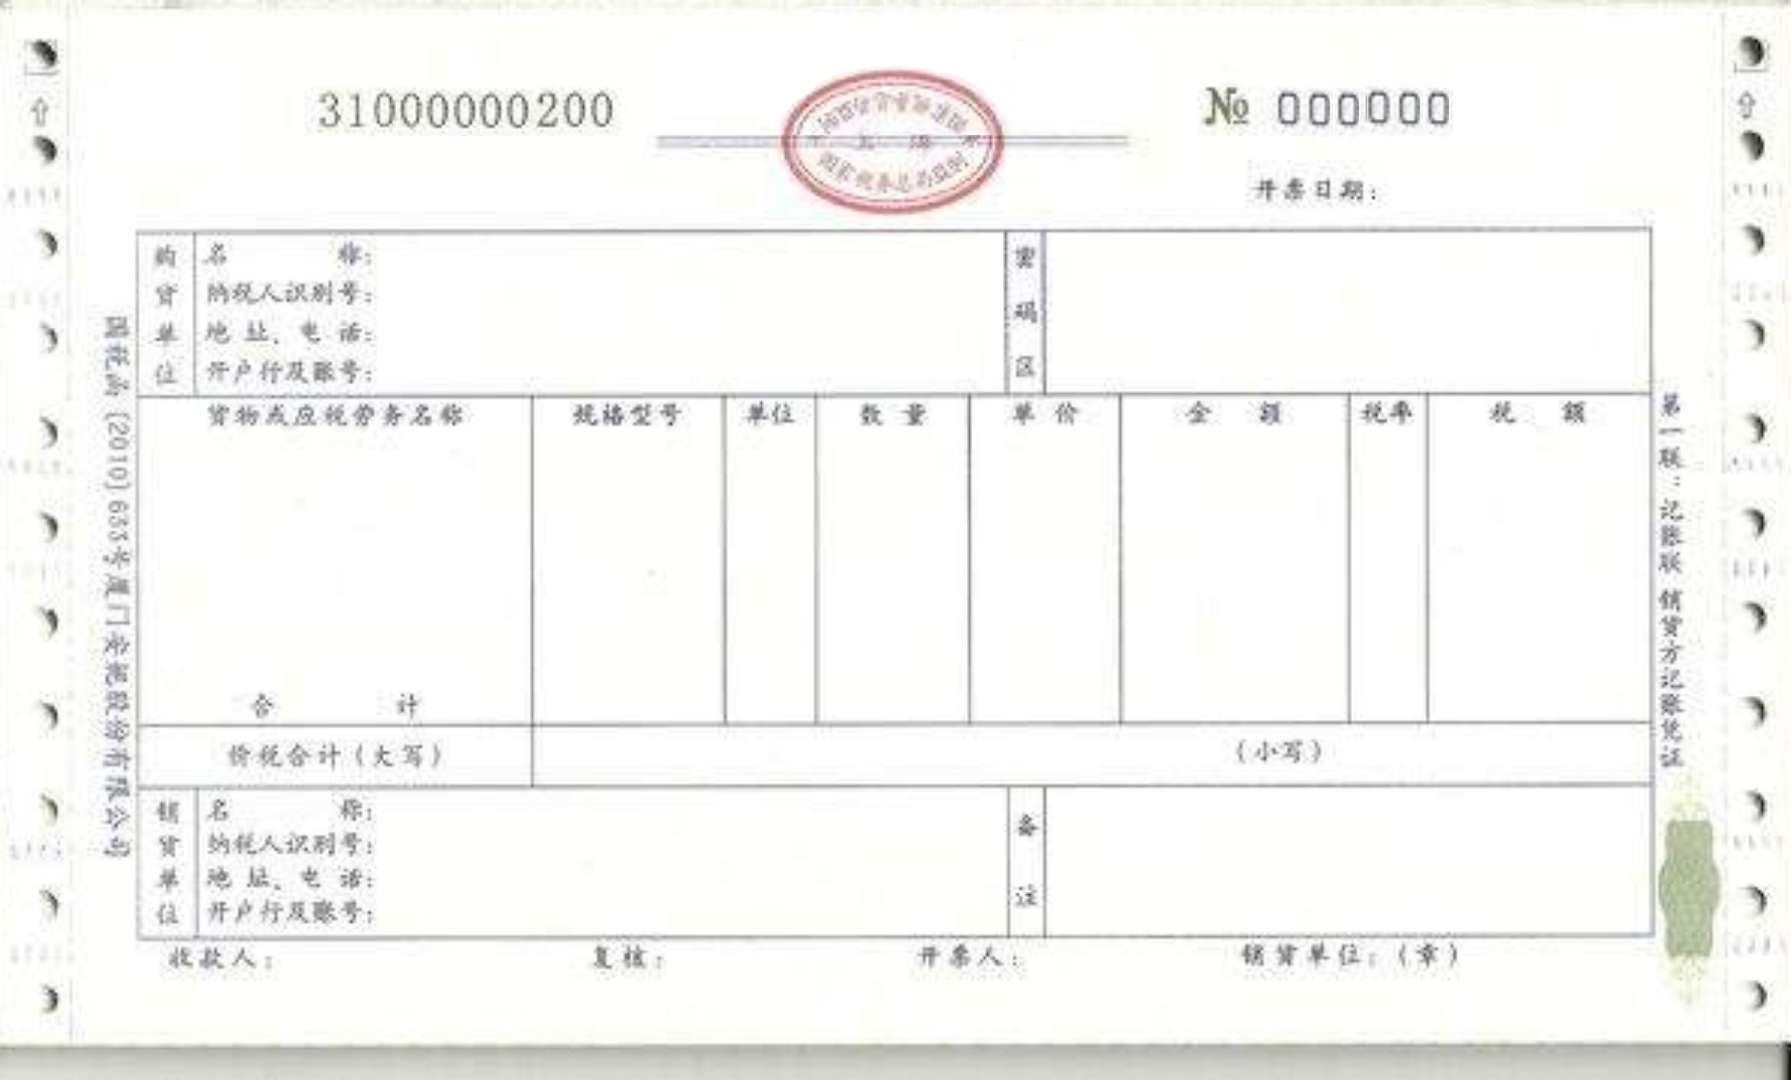 Chinese invoice 发票 模板